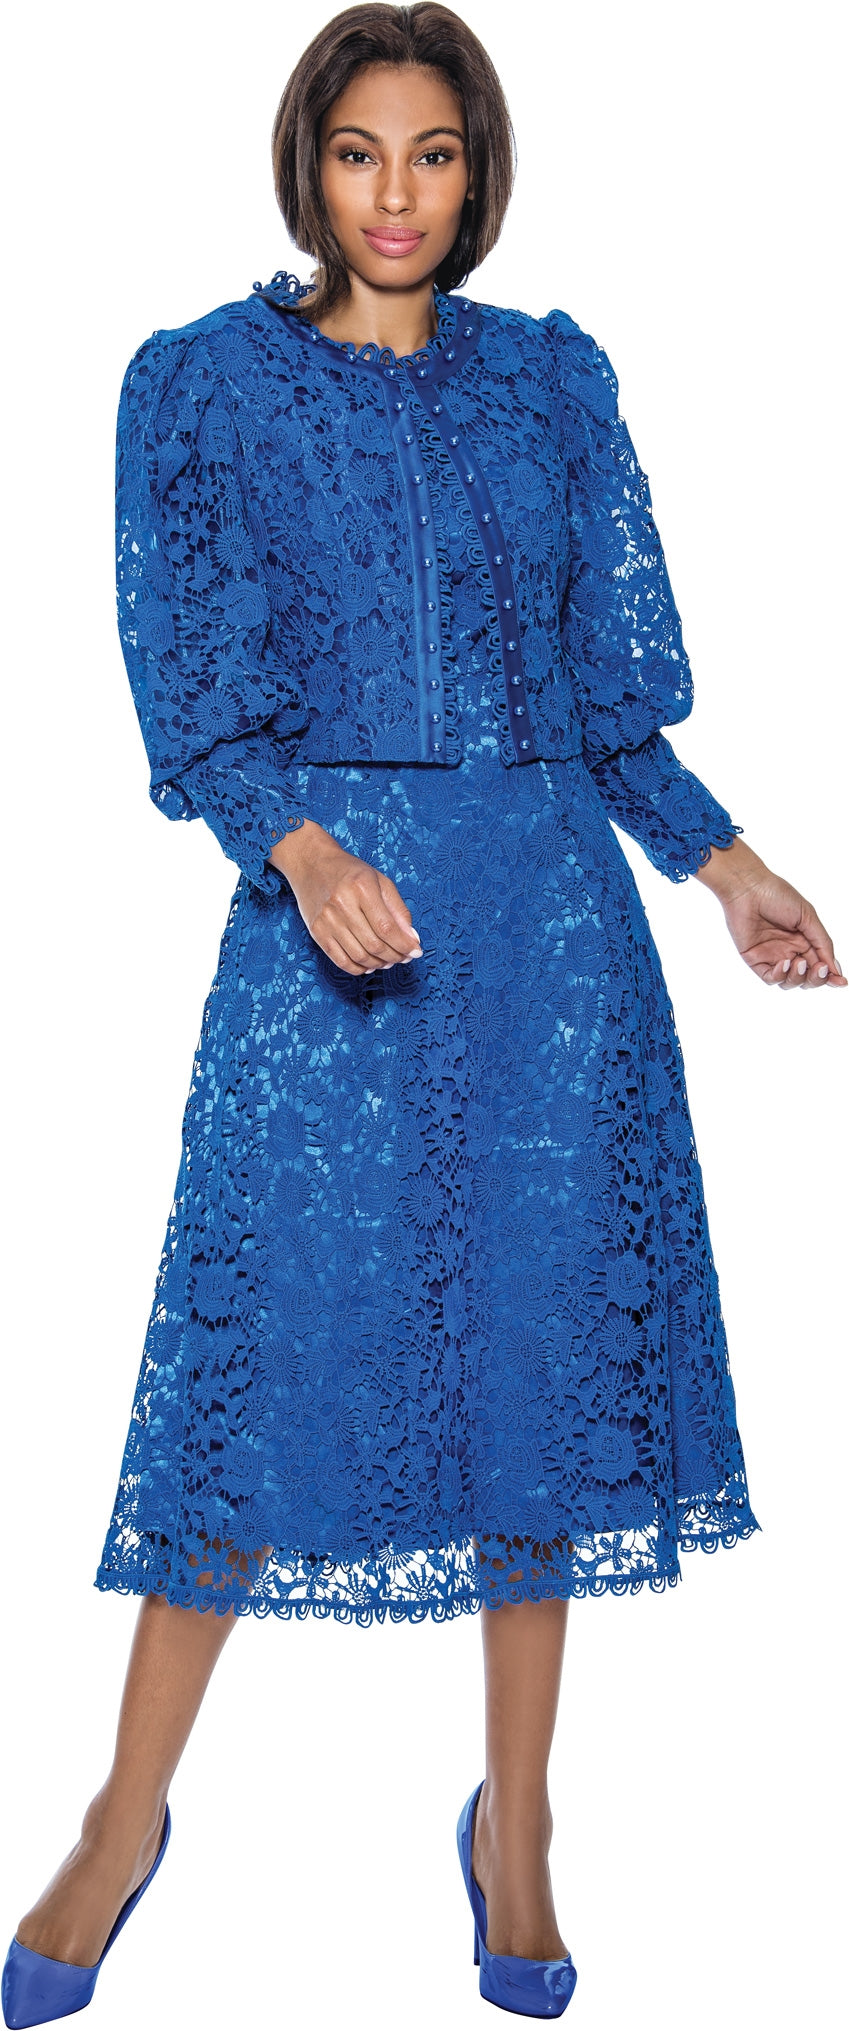 Terramina Church Dress 7051C-Royal Blue - Church Suits For Less